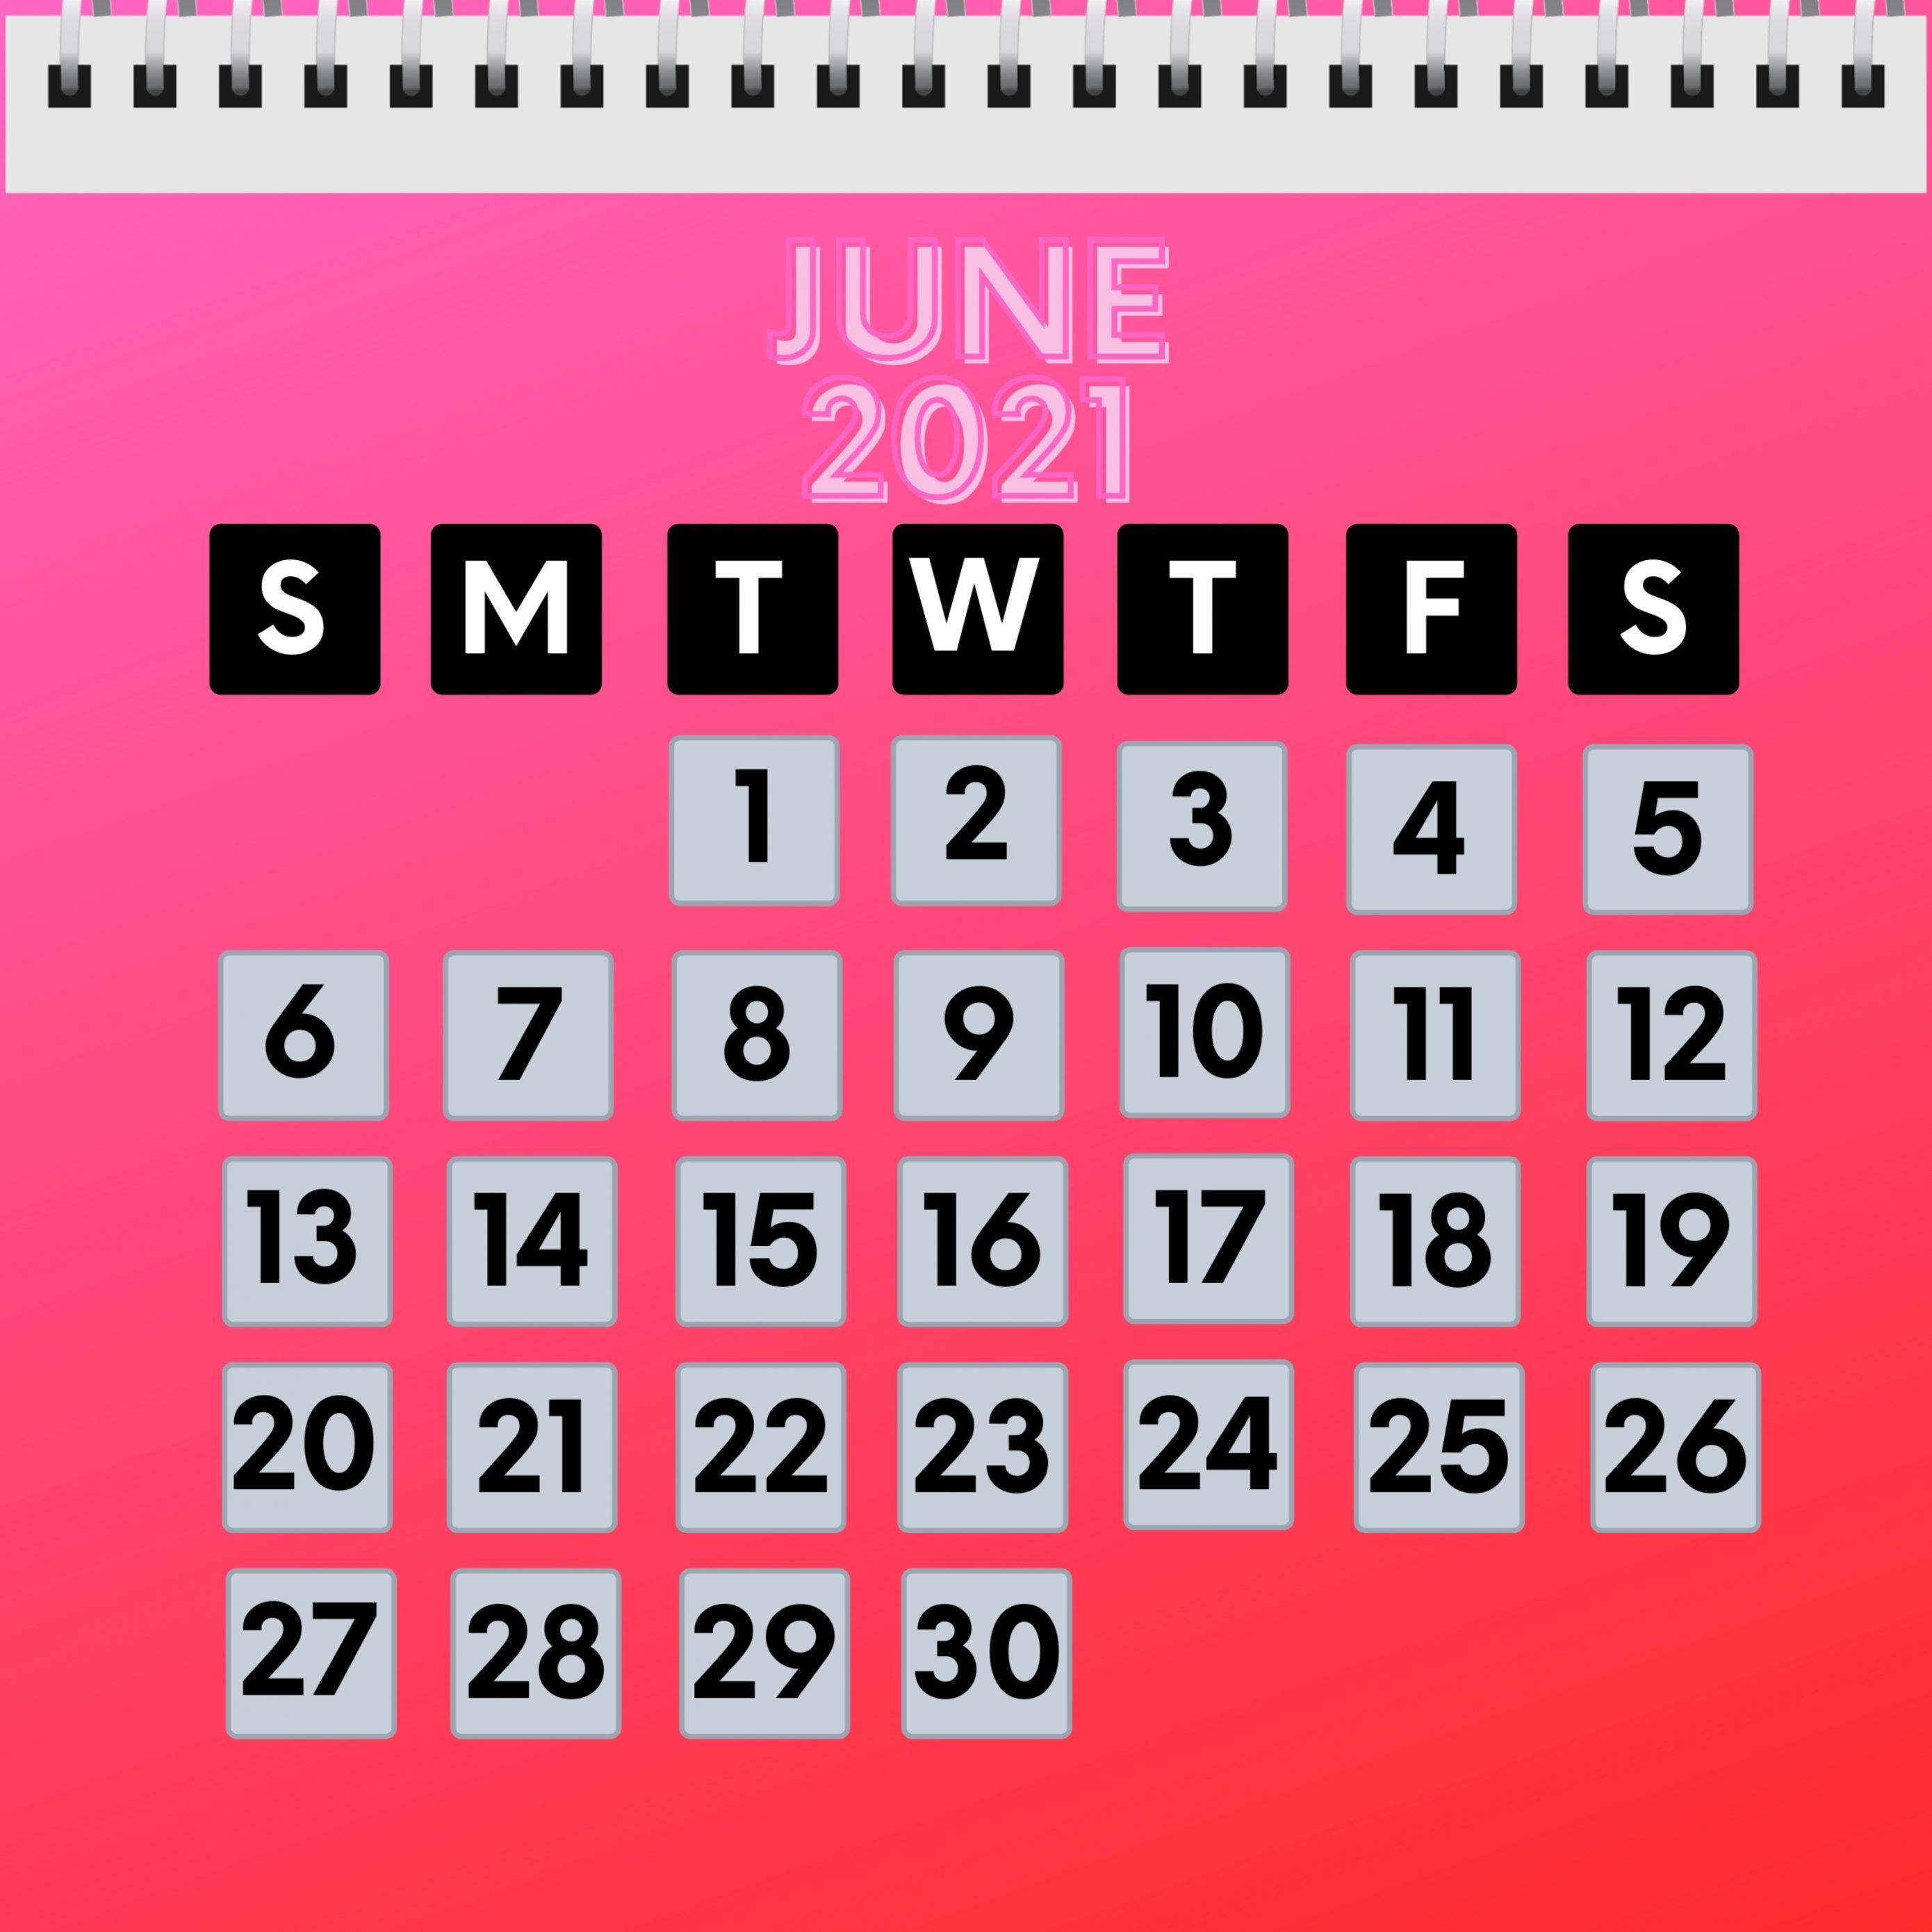 2780x2780 Parallax wallpaper 4k June 2021 Calendar iPad Wallpaper 2780x2780 pixels resolution